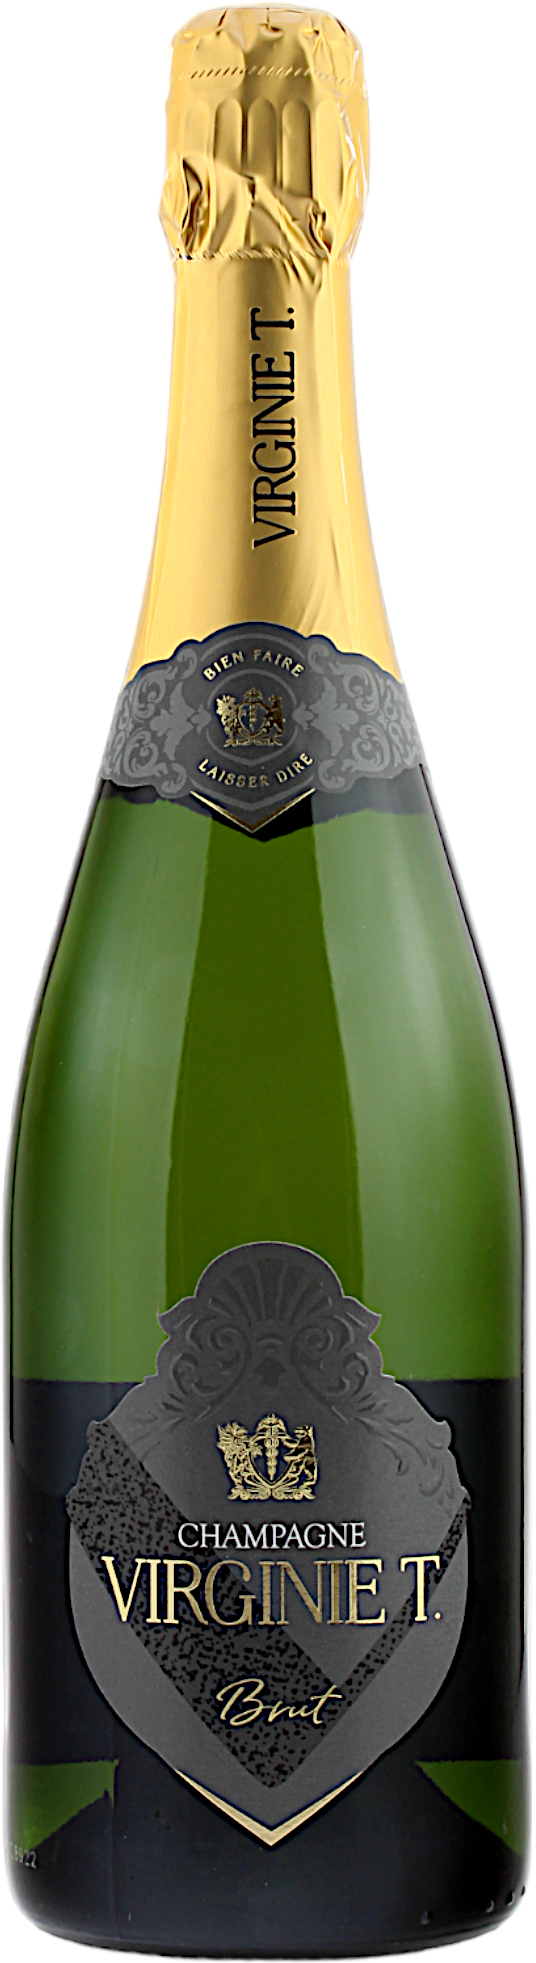 Champagne Virginie T.  Brut 12.5% 0,75l